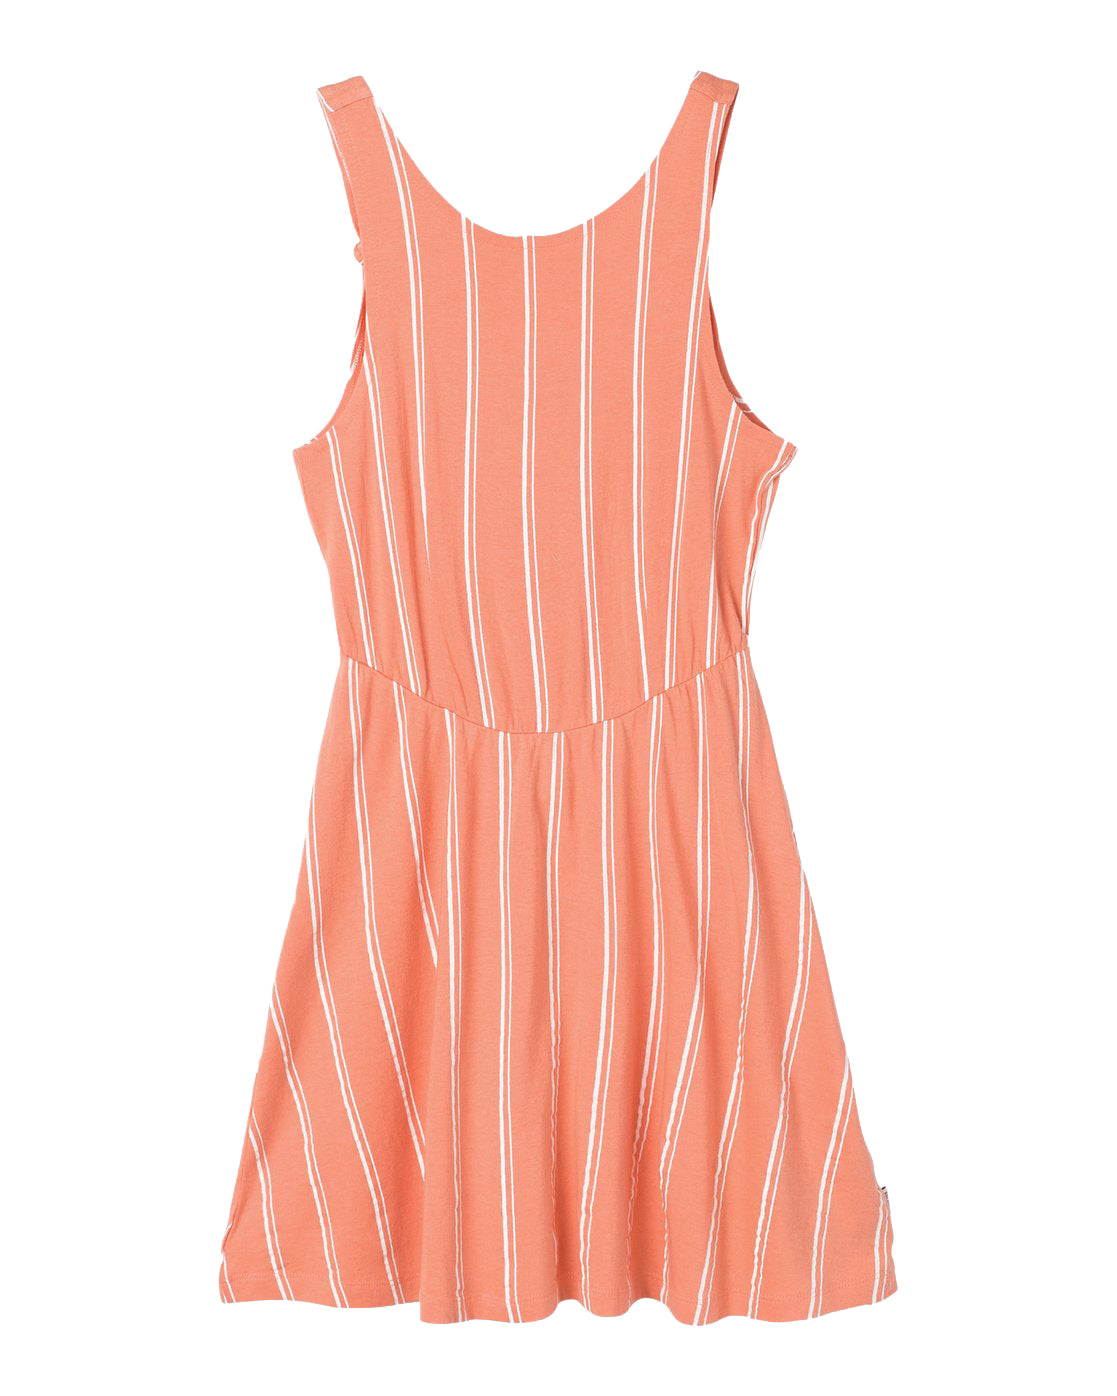 RVCA Peony Striped Dress CCL-CoralCloud L